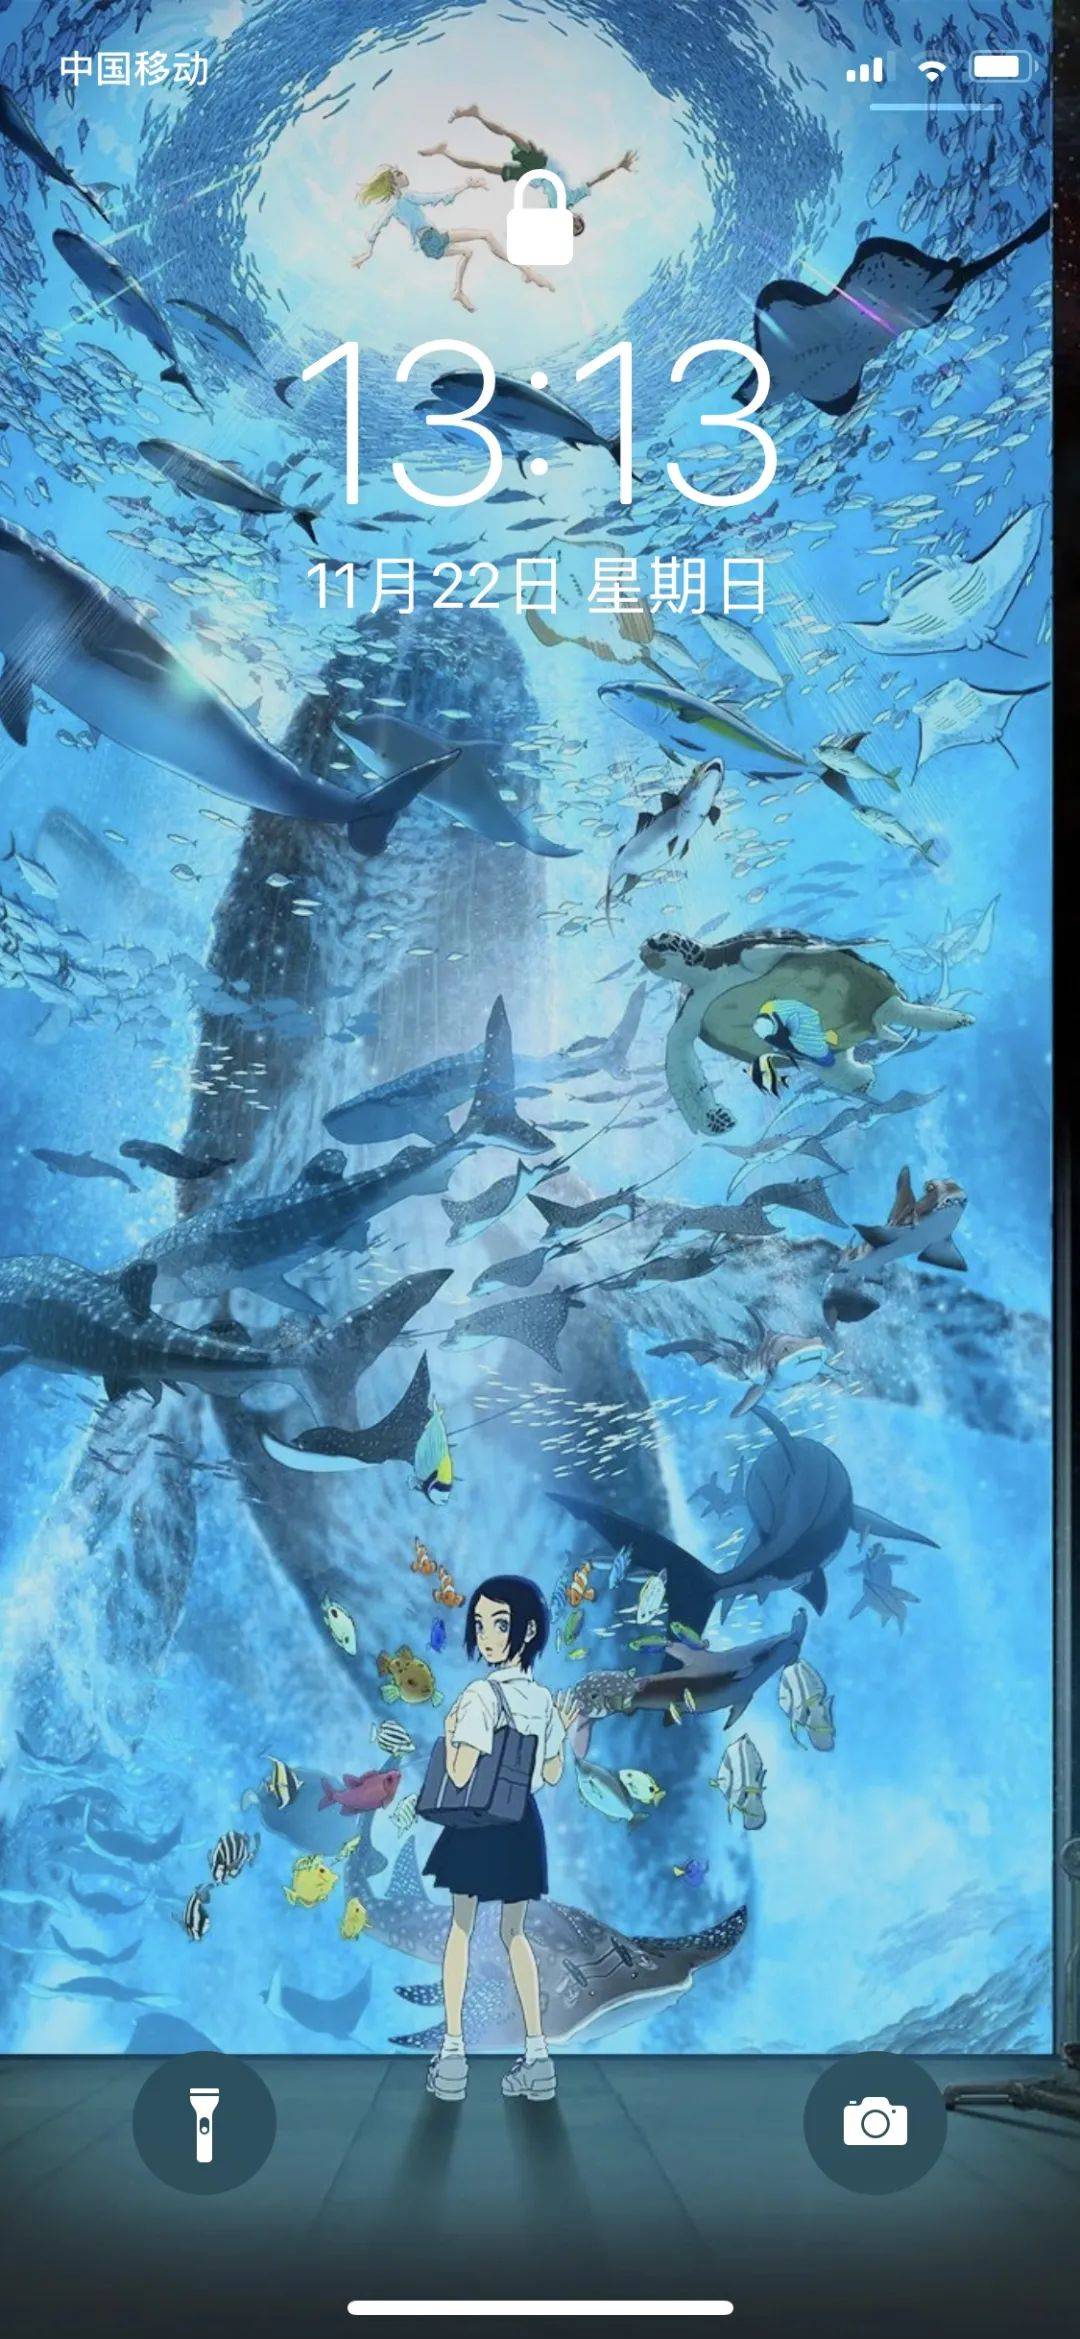 《海兽之子》梦回夏日的阳光和海洋| 海报同款壁纸来了!